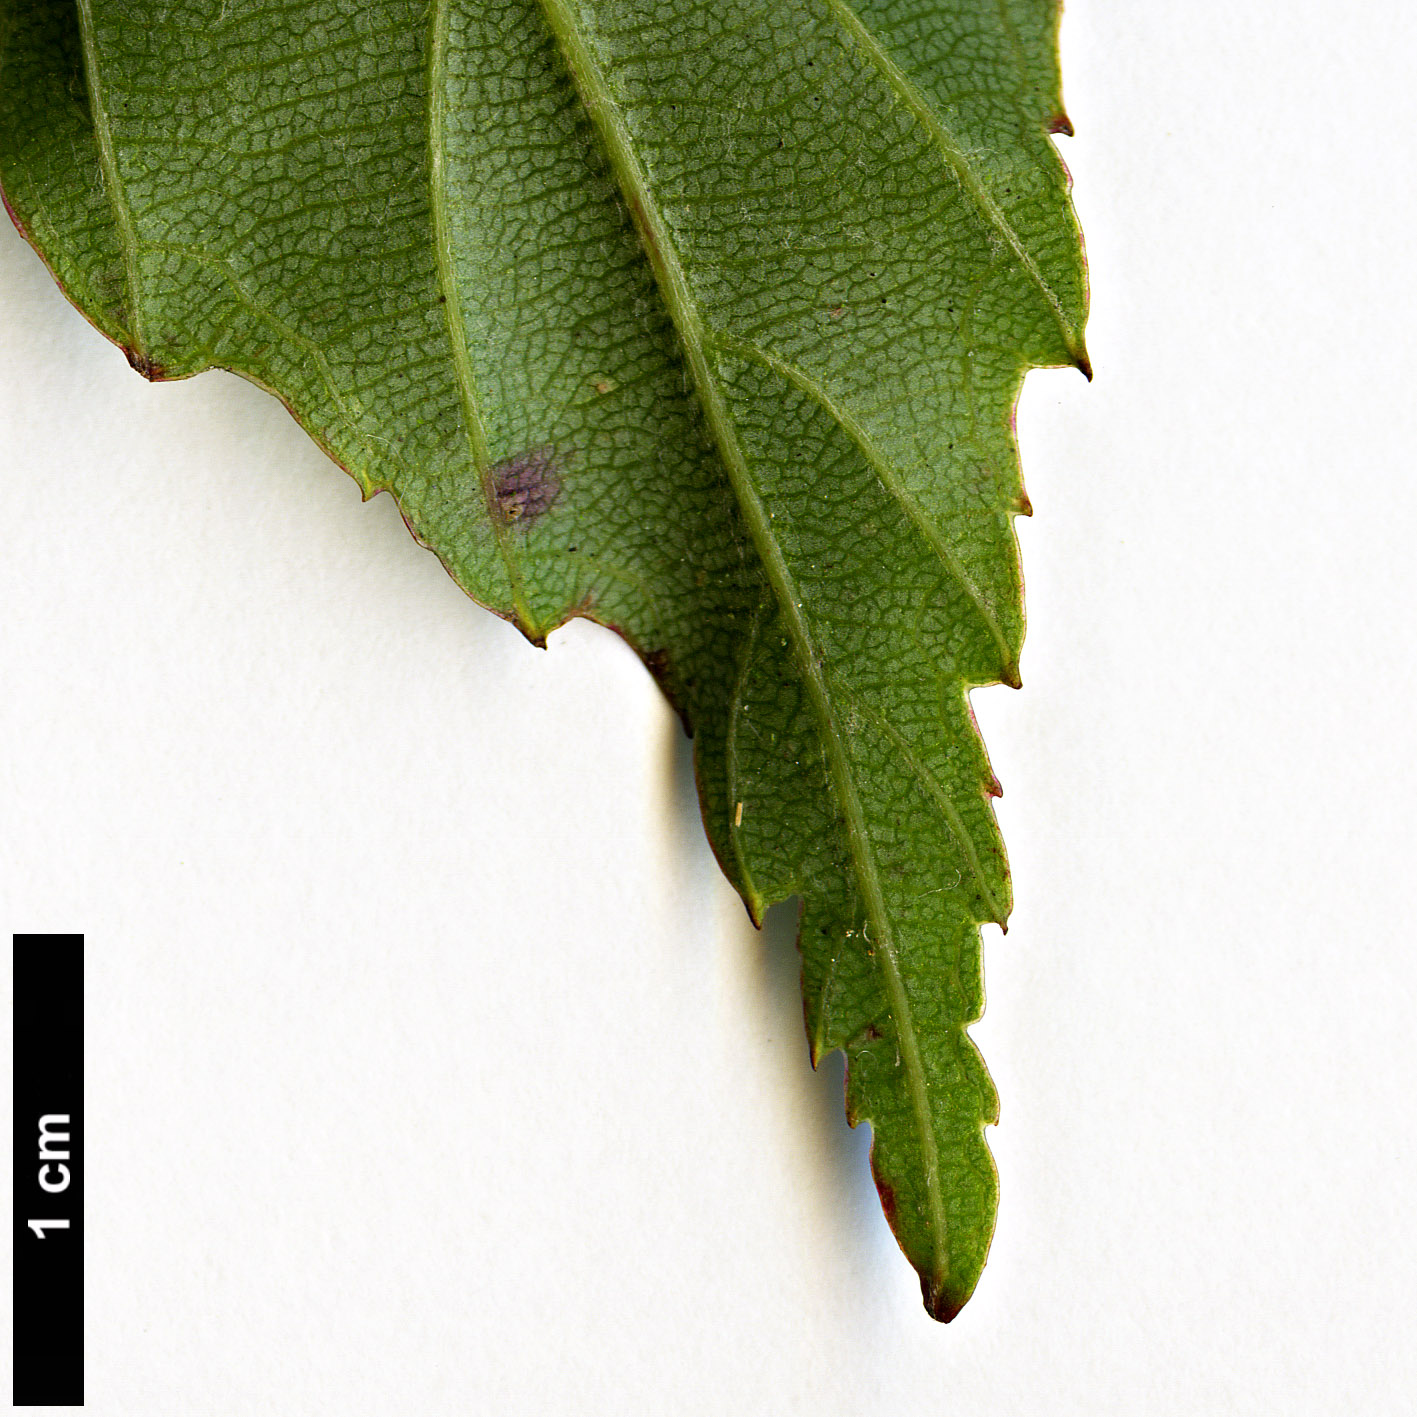 High resolution image: Family: Rosaceae - Genus: Rubus - Taxon: acuminatus